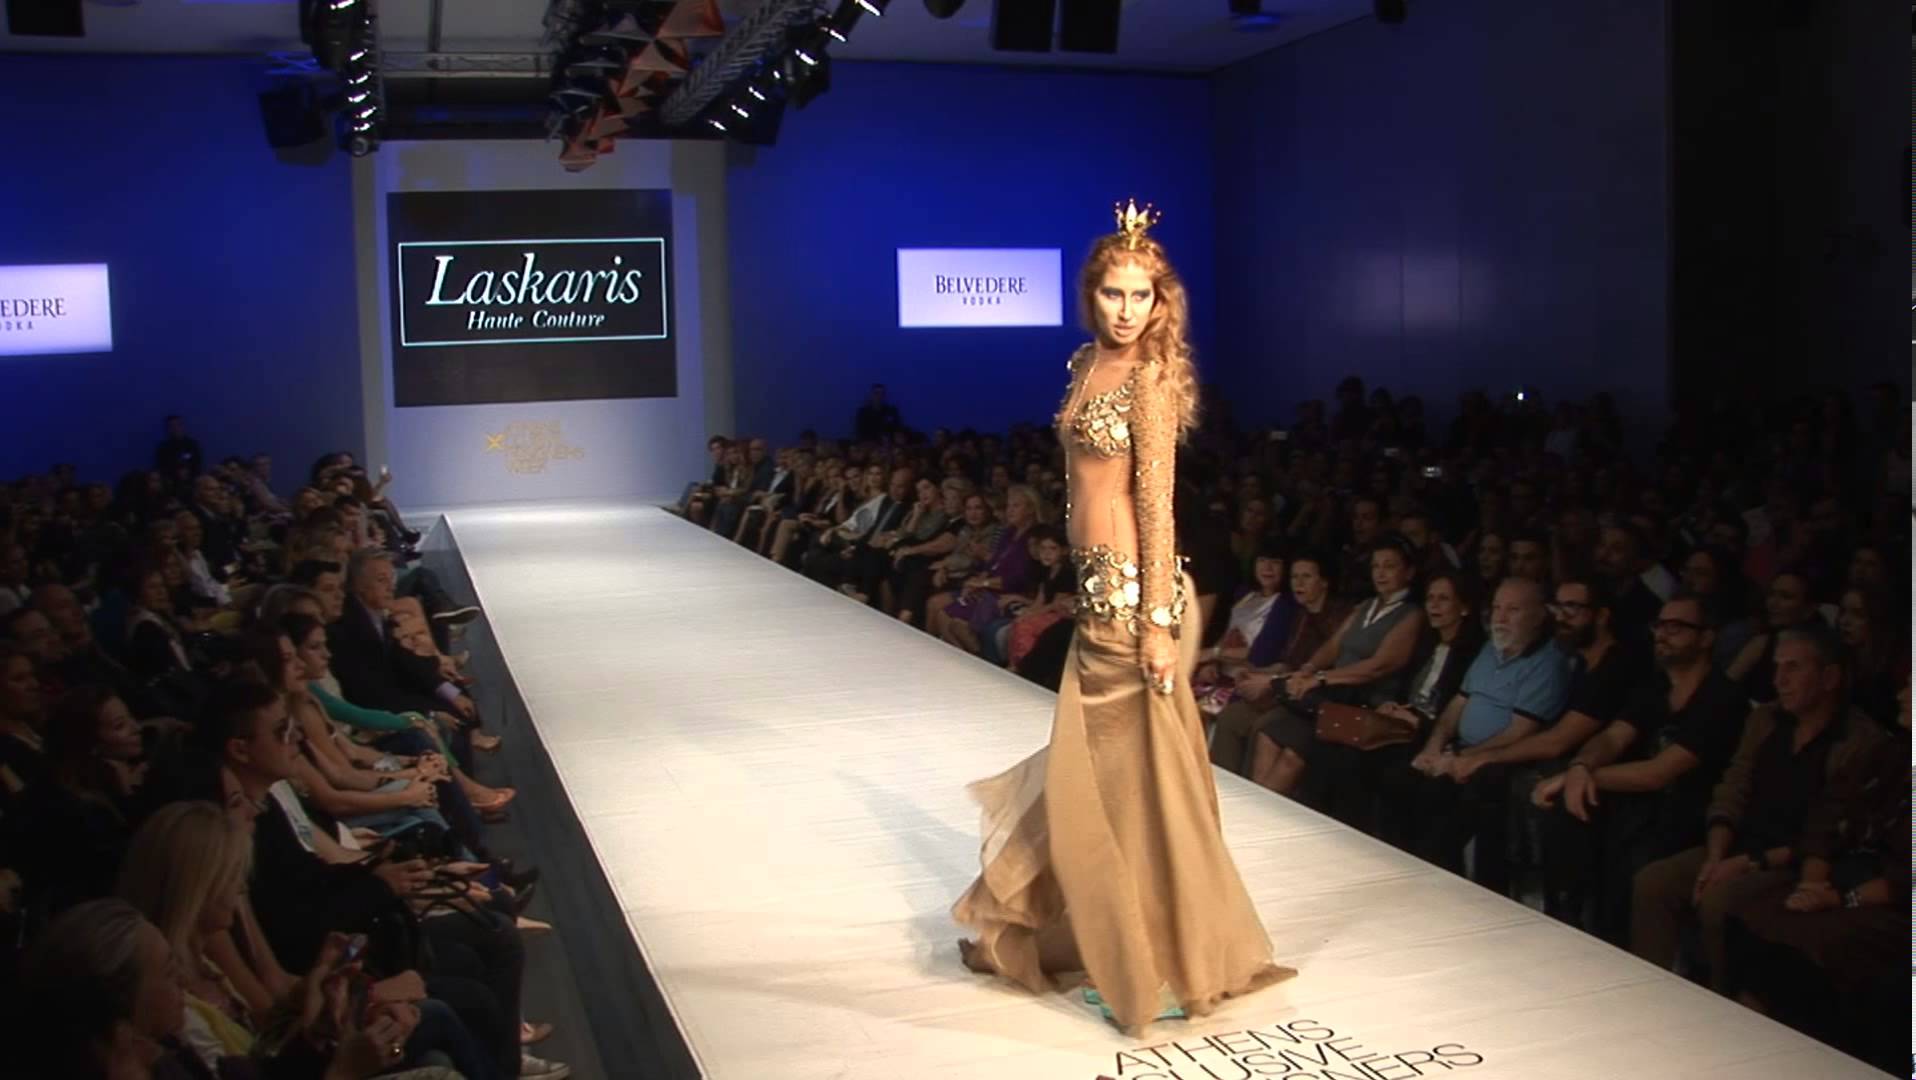 Η πιο λαμπερή επίδειξη μόδας από την Μαρία, το «Μake a wish» και τον γνωστό σχεδιαστή Laskaris